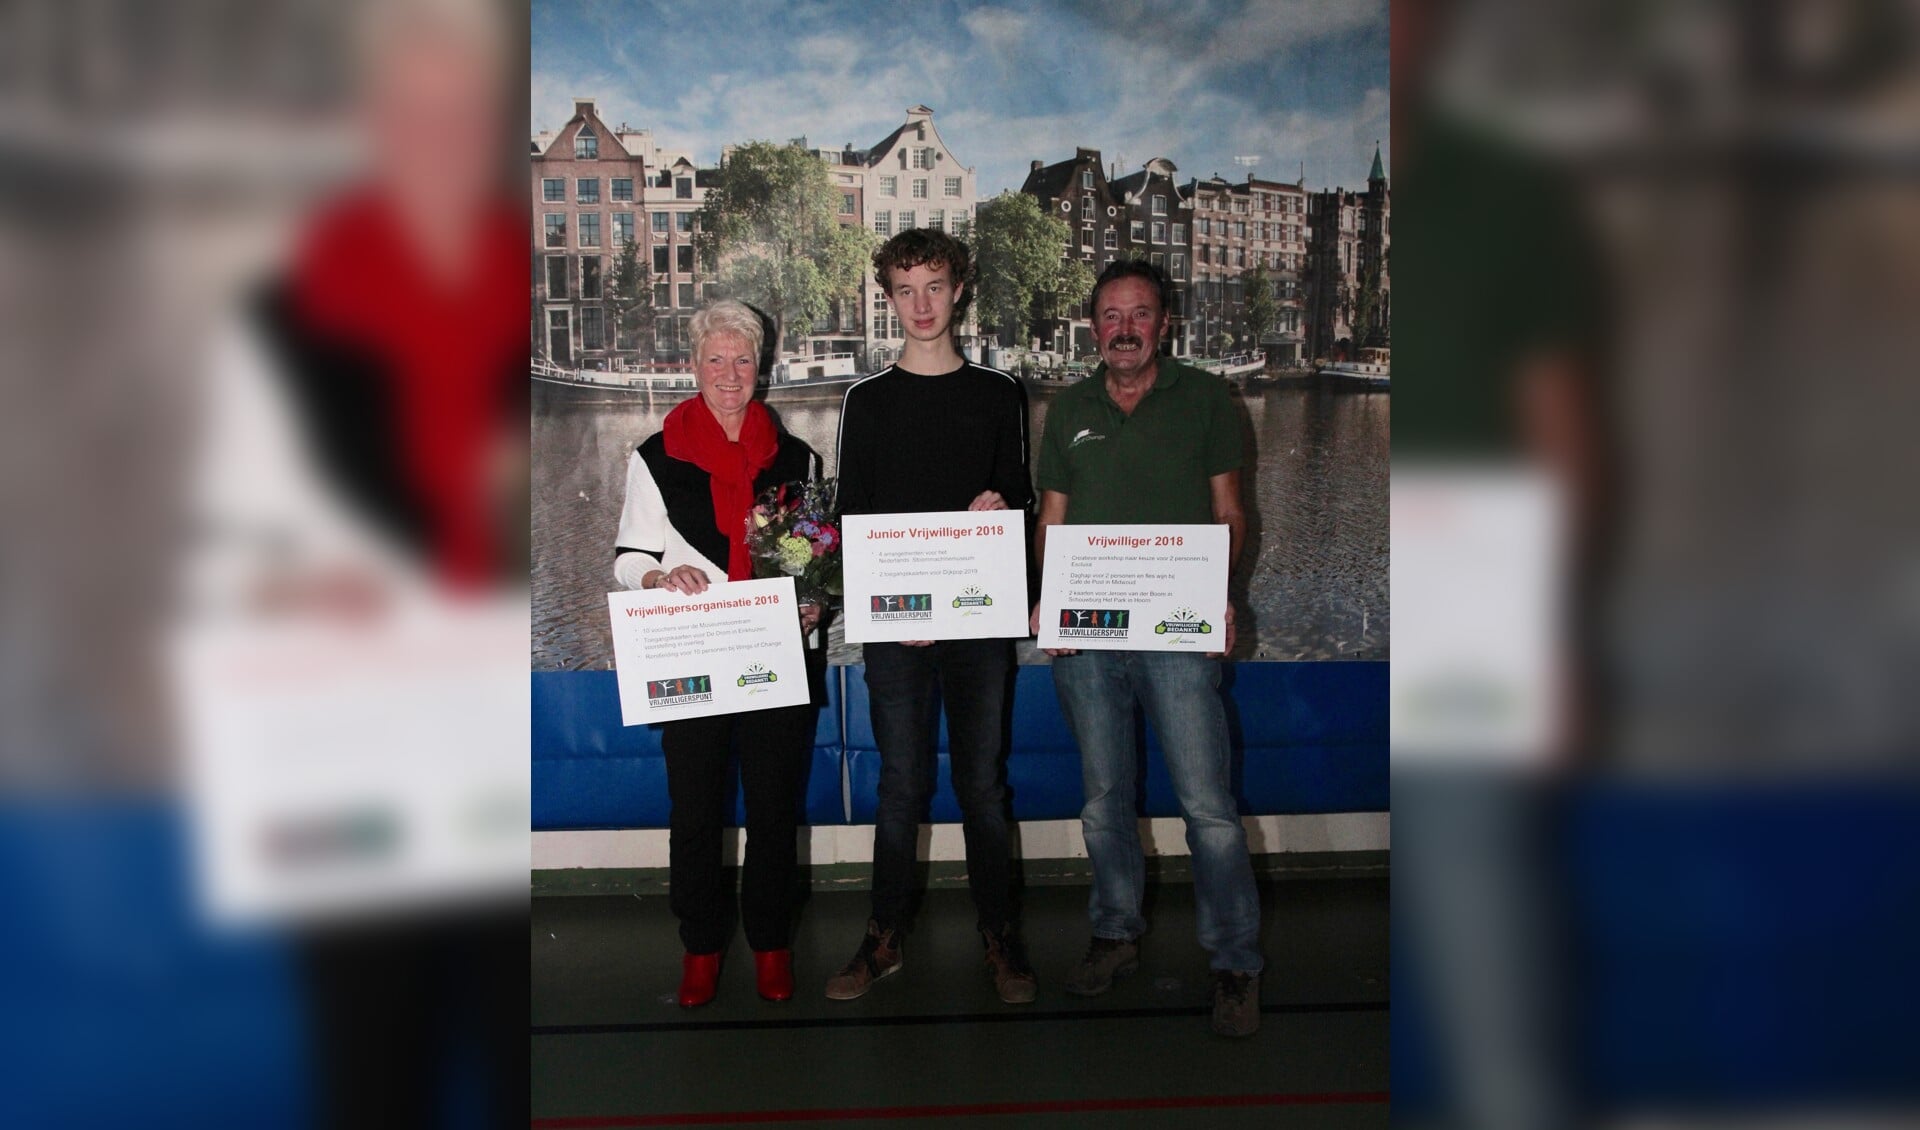 De winnaars van de vrijwilligersprijzen: v.l.n.r. Els Beers van Stichting Warme maaltijdvoorziening, Daan Immen en Roy van der Ven. (Foto: aangeleverd)